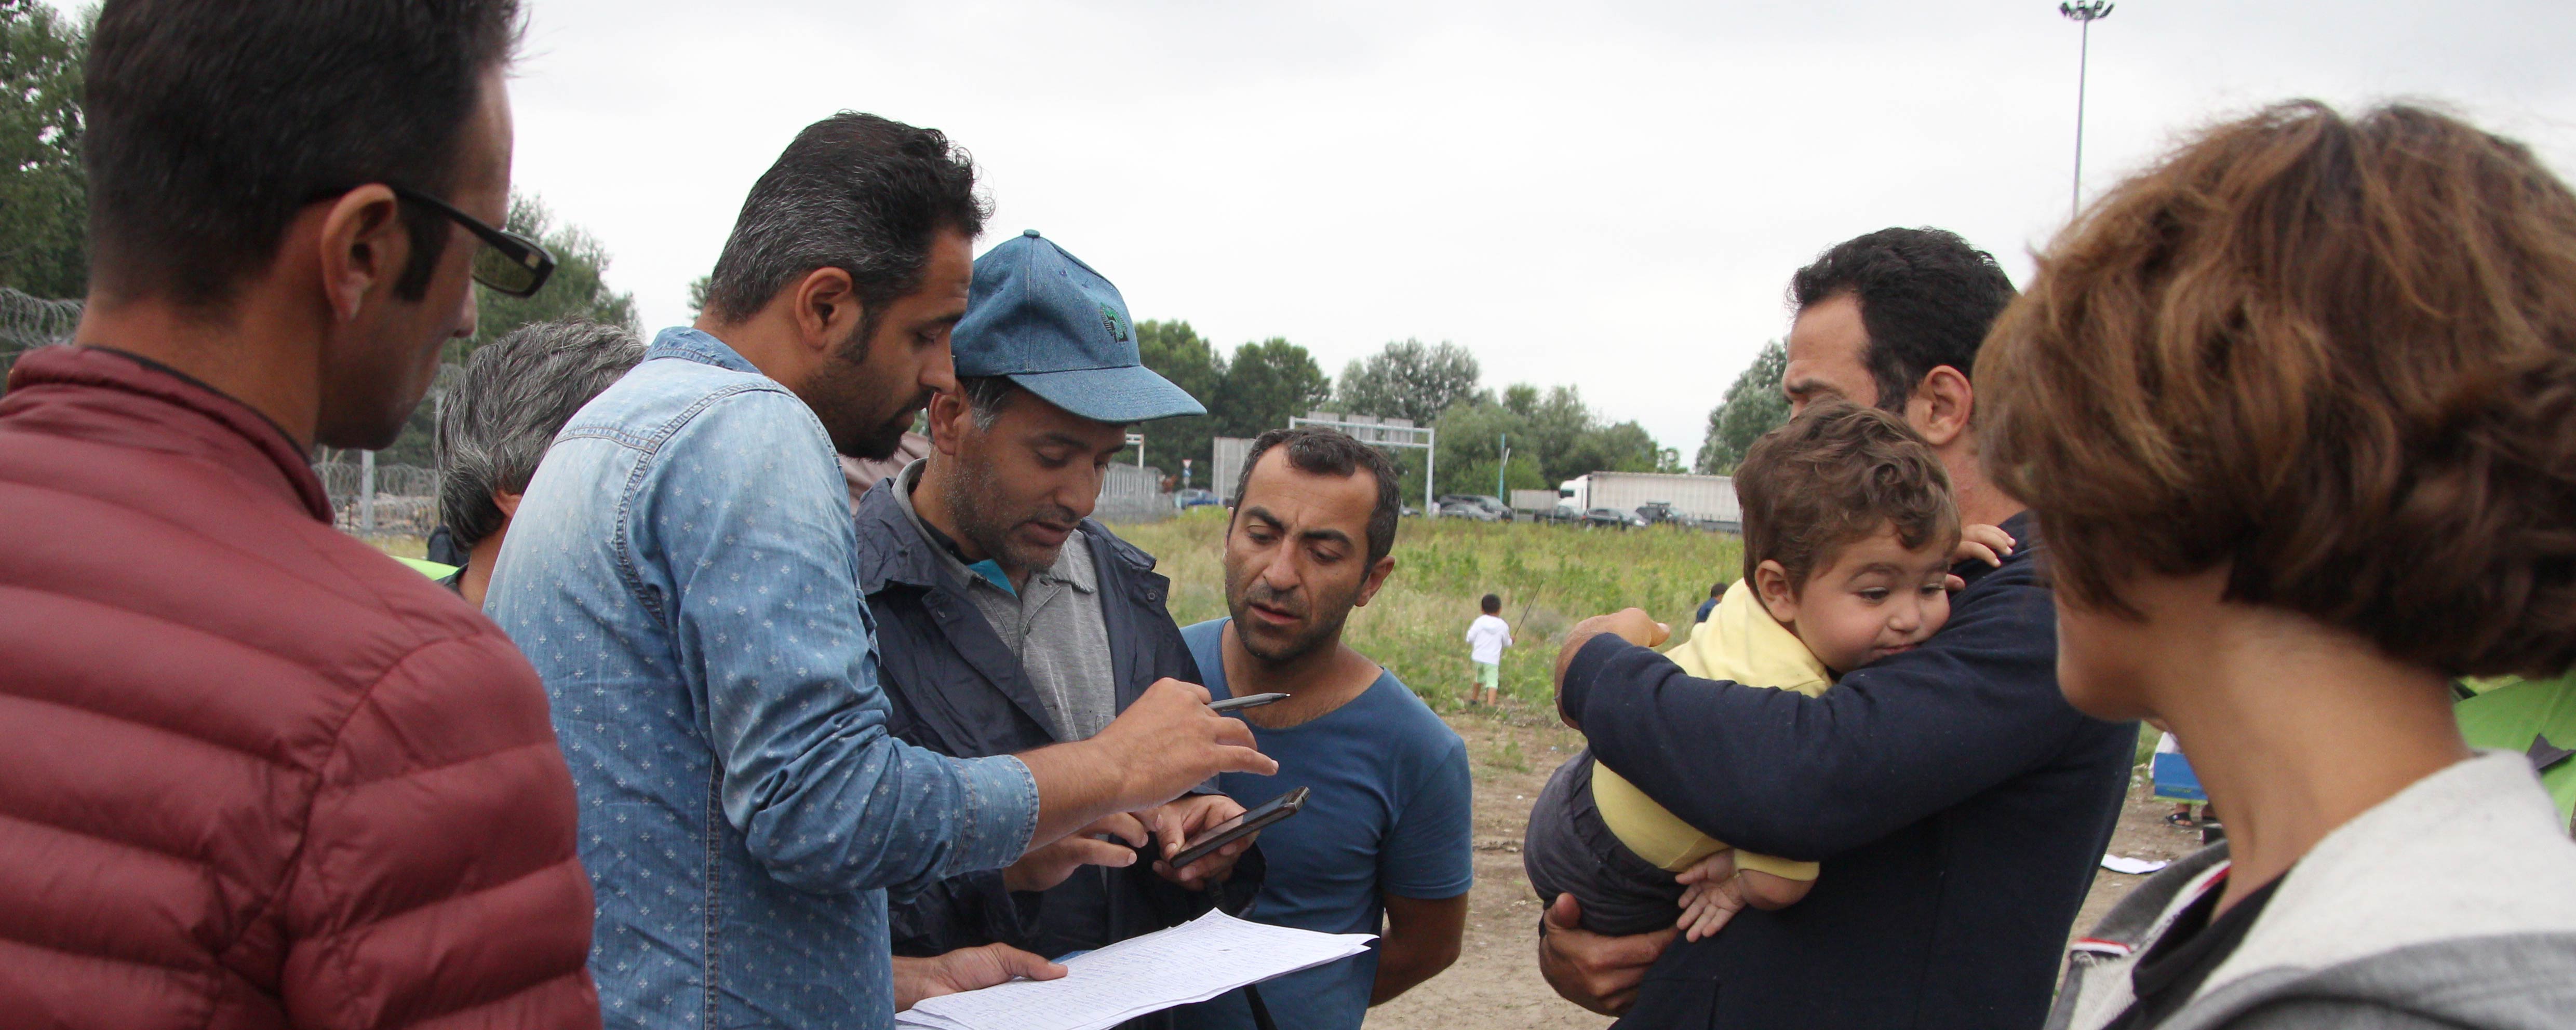 UNHCR znepokojuje posílání migrantů z Itálie do Libye